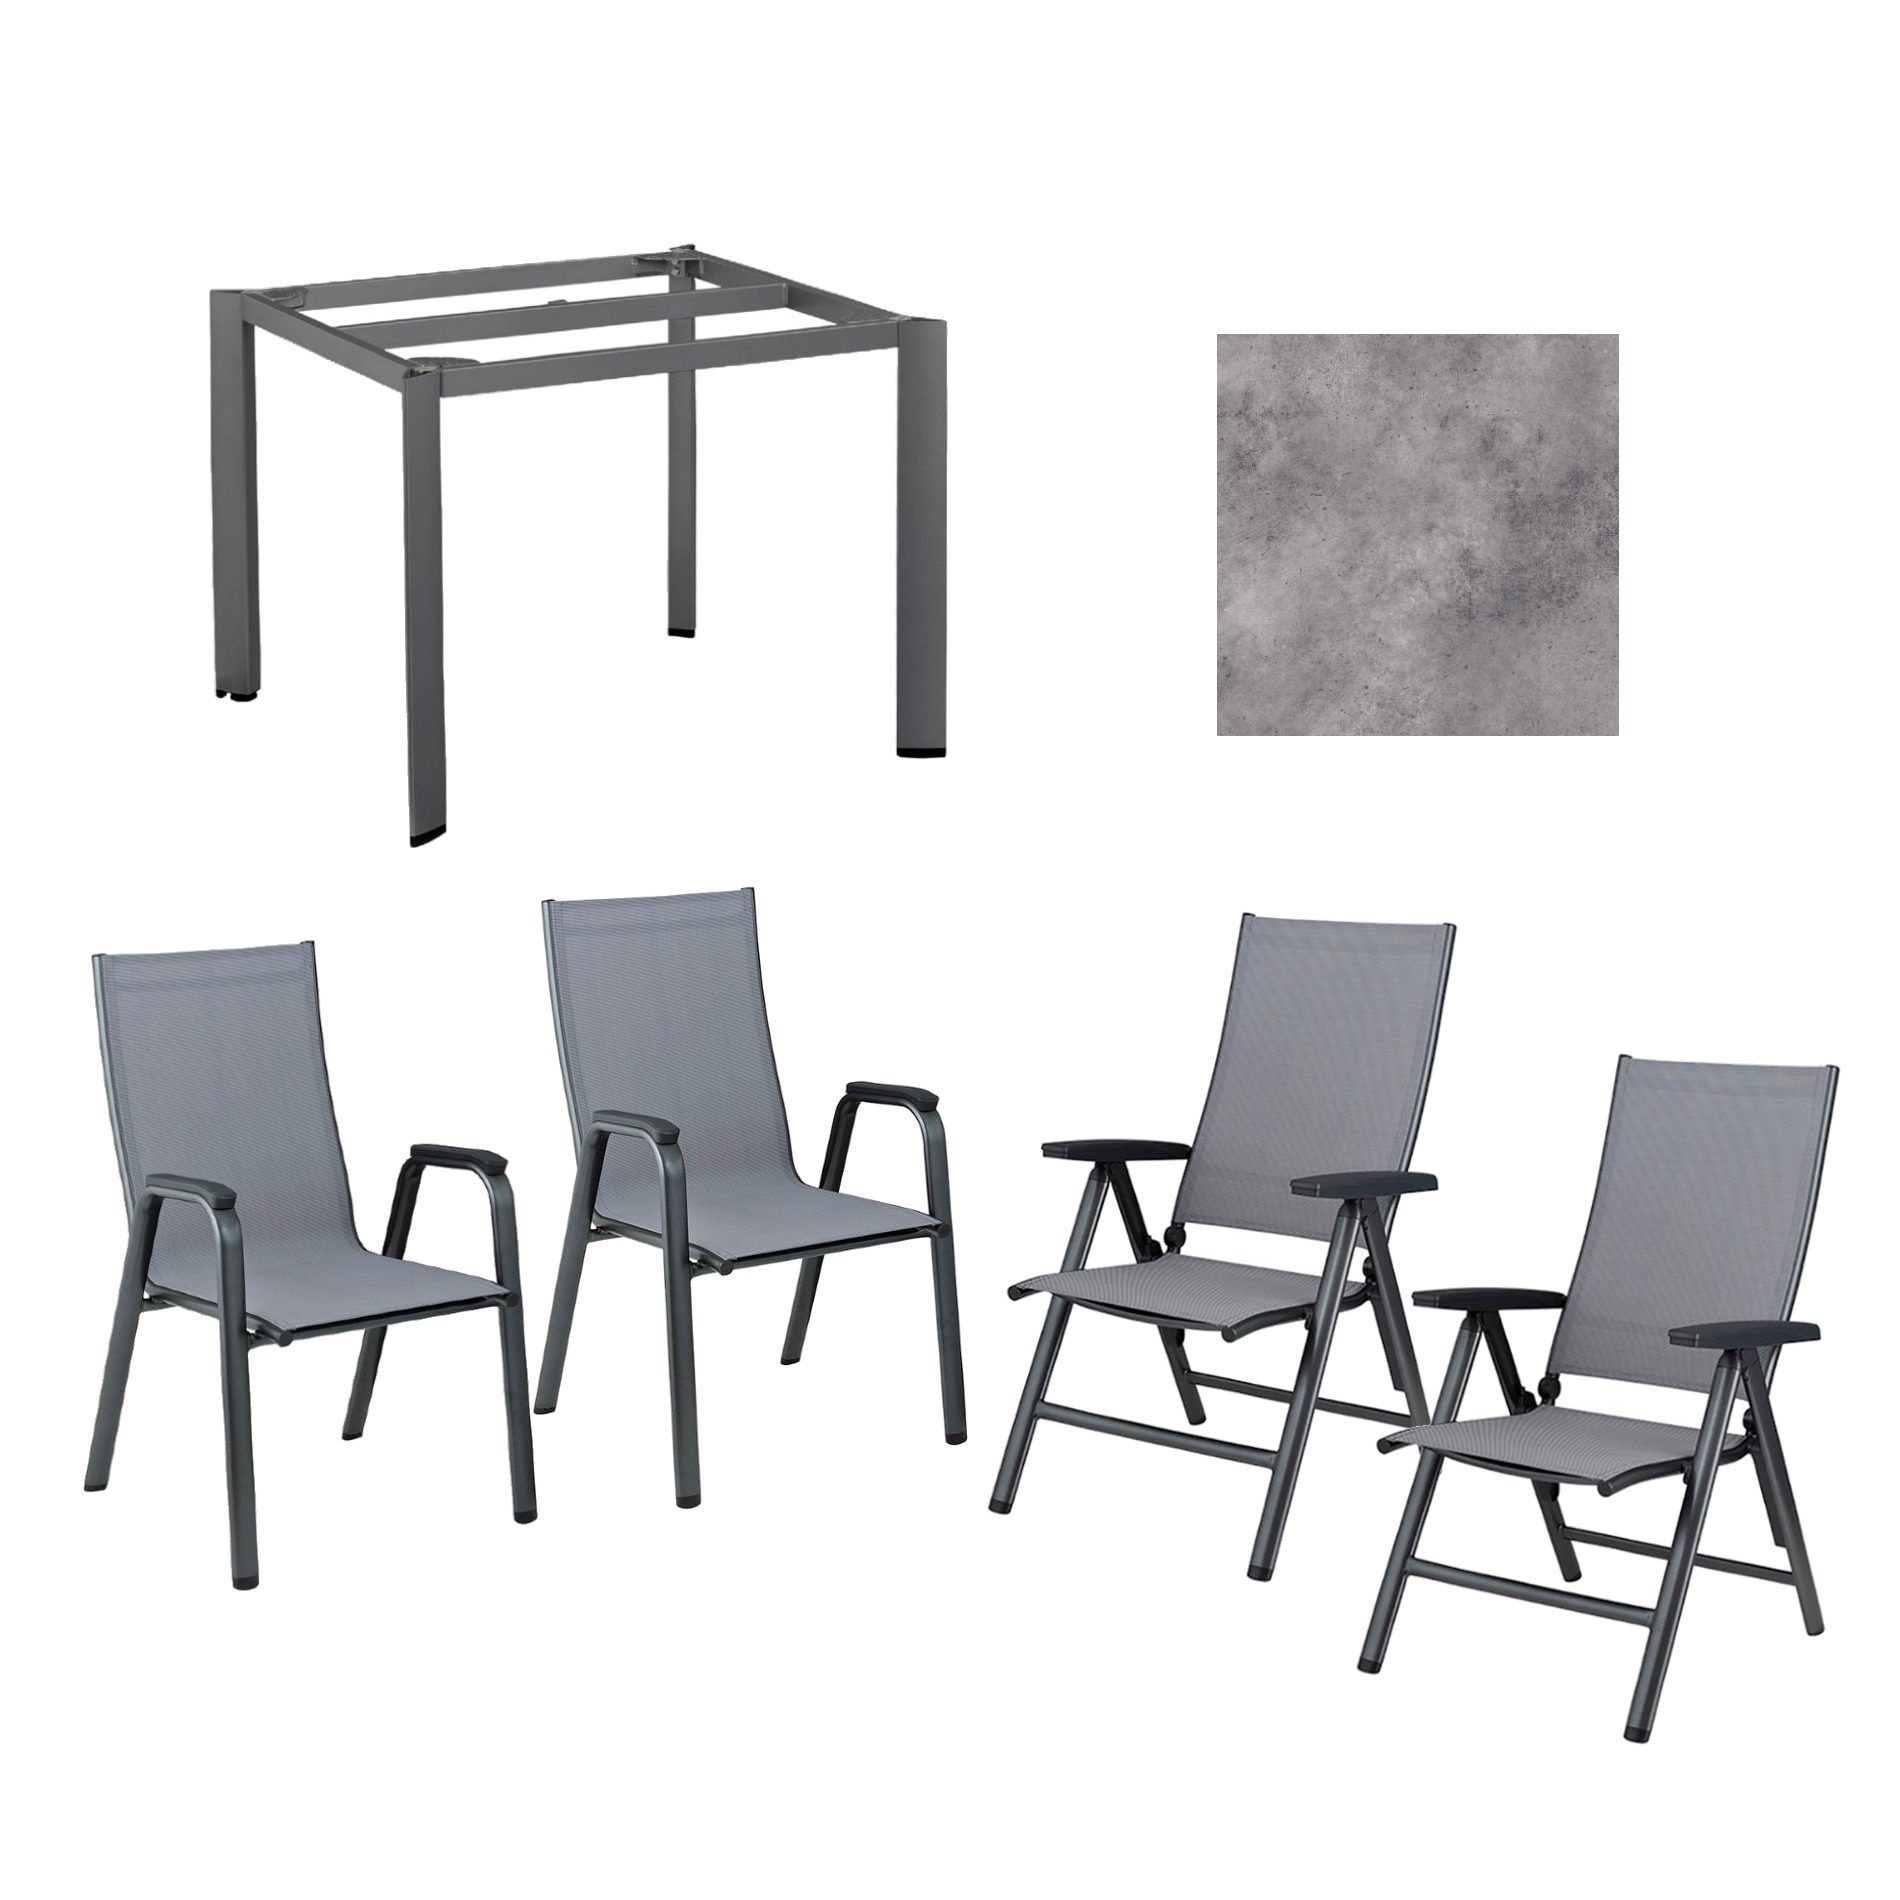 Kettler Gartenmöbel-Set mit "Cirrus" Klapp- und Stapelsessel und "Edge" Gartentisch, Gestelle Aluminium anthrazit, Sitz Textilgewebe anthrazit-grau, Tischplatte HPL anthrazit